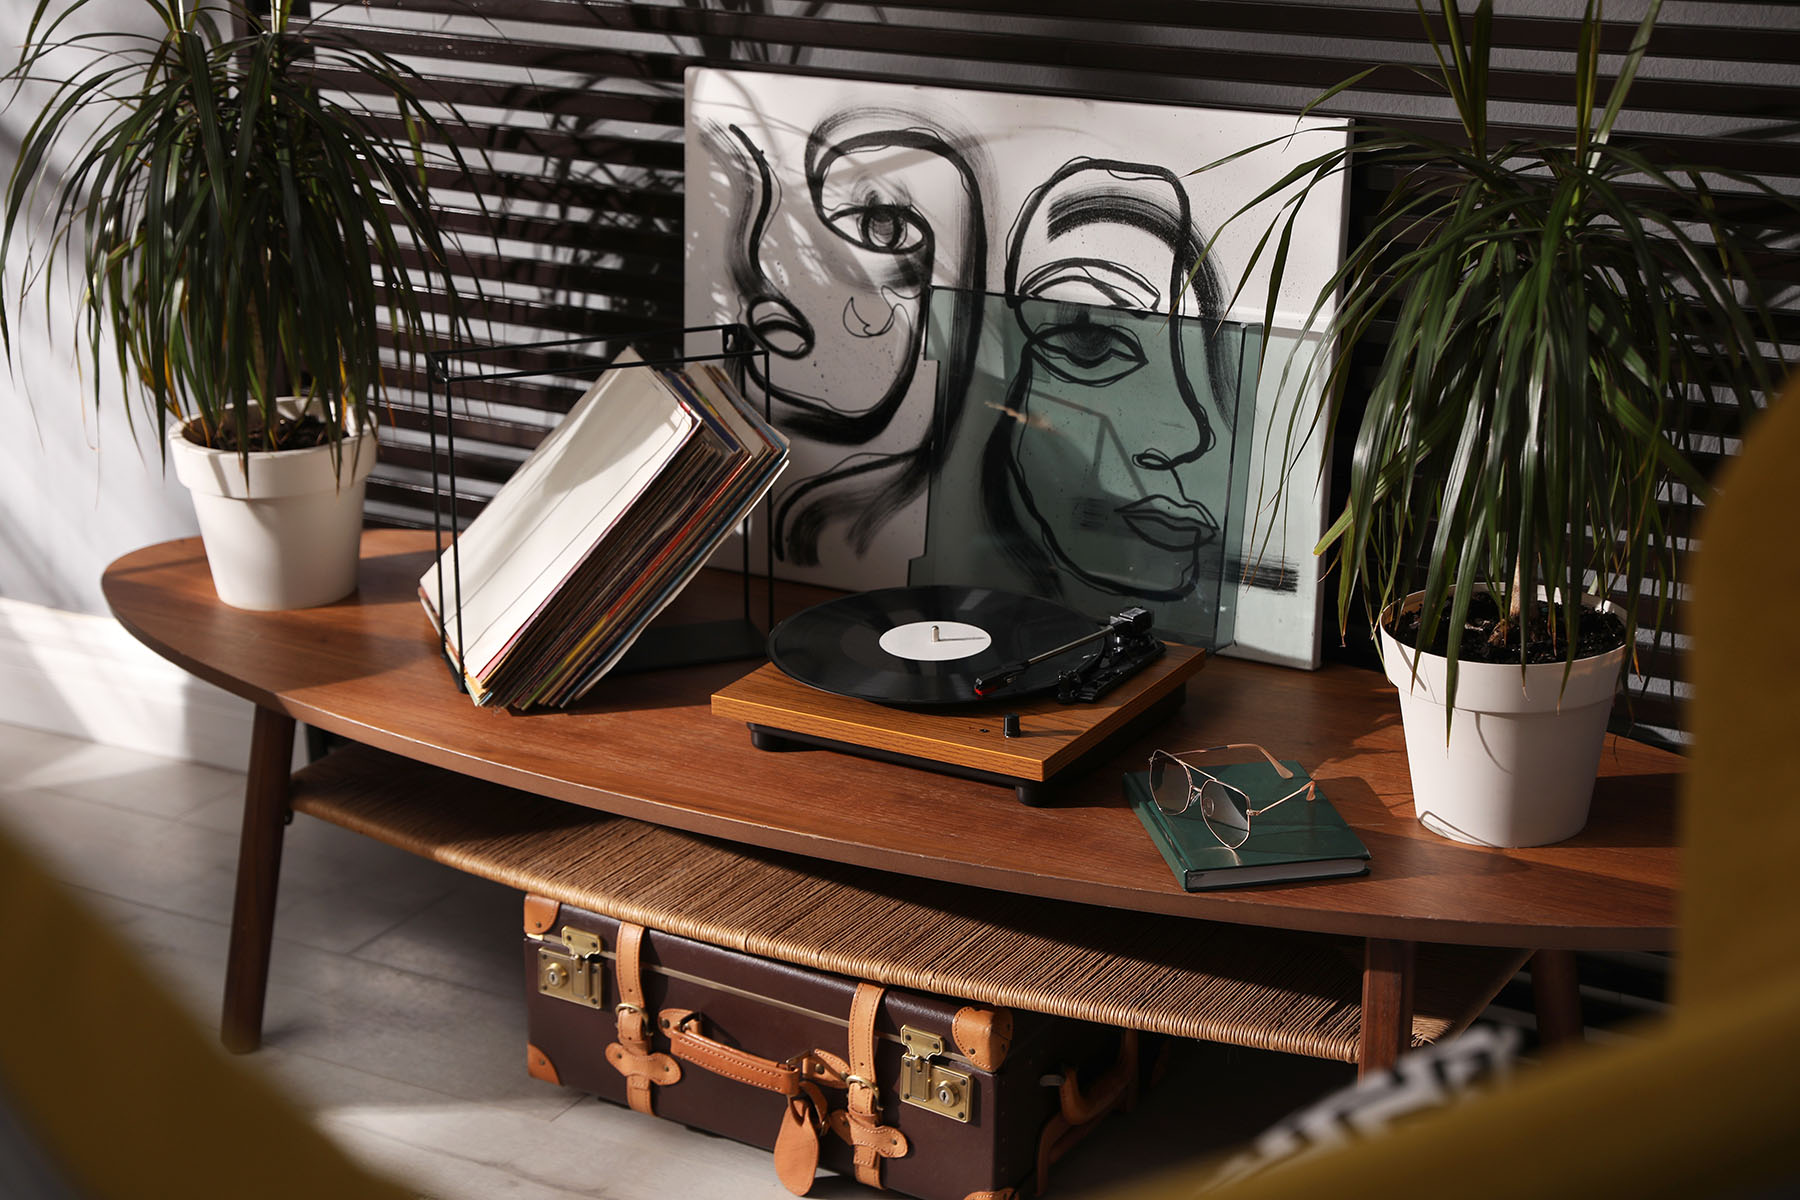 Grammofon auf dem Tisch im Zimmer